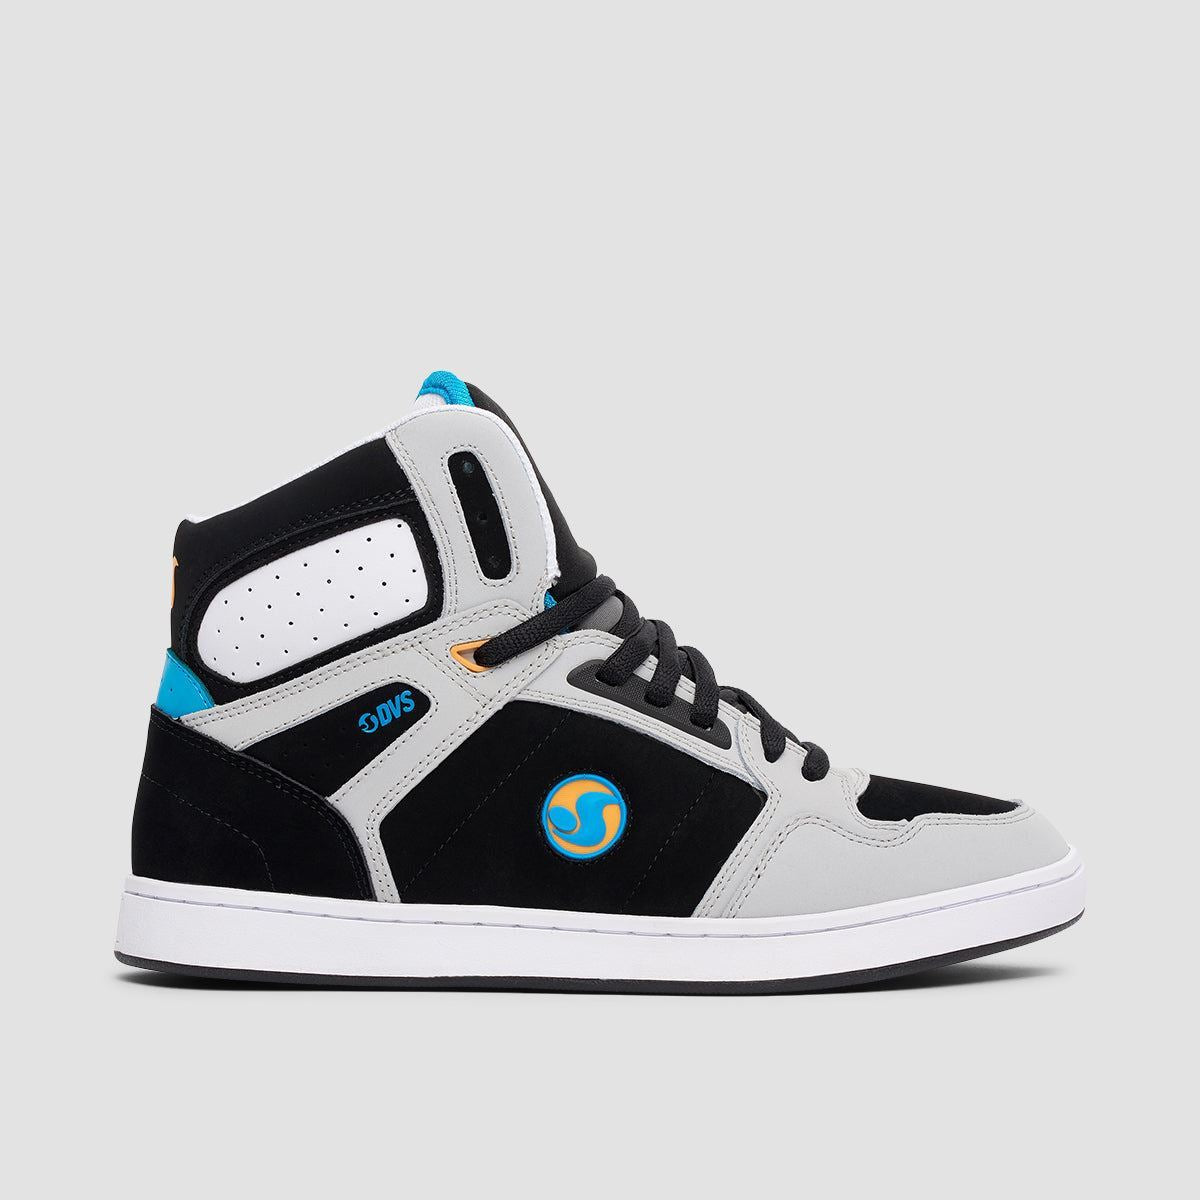 DVS Honcho High Top Shoes - Grey/Black/Blue Nubuck